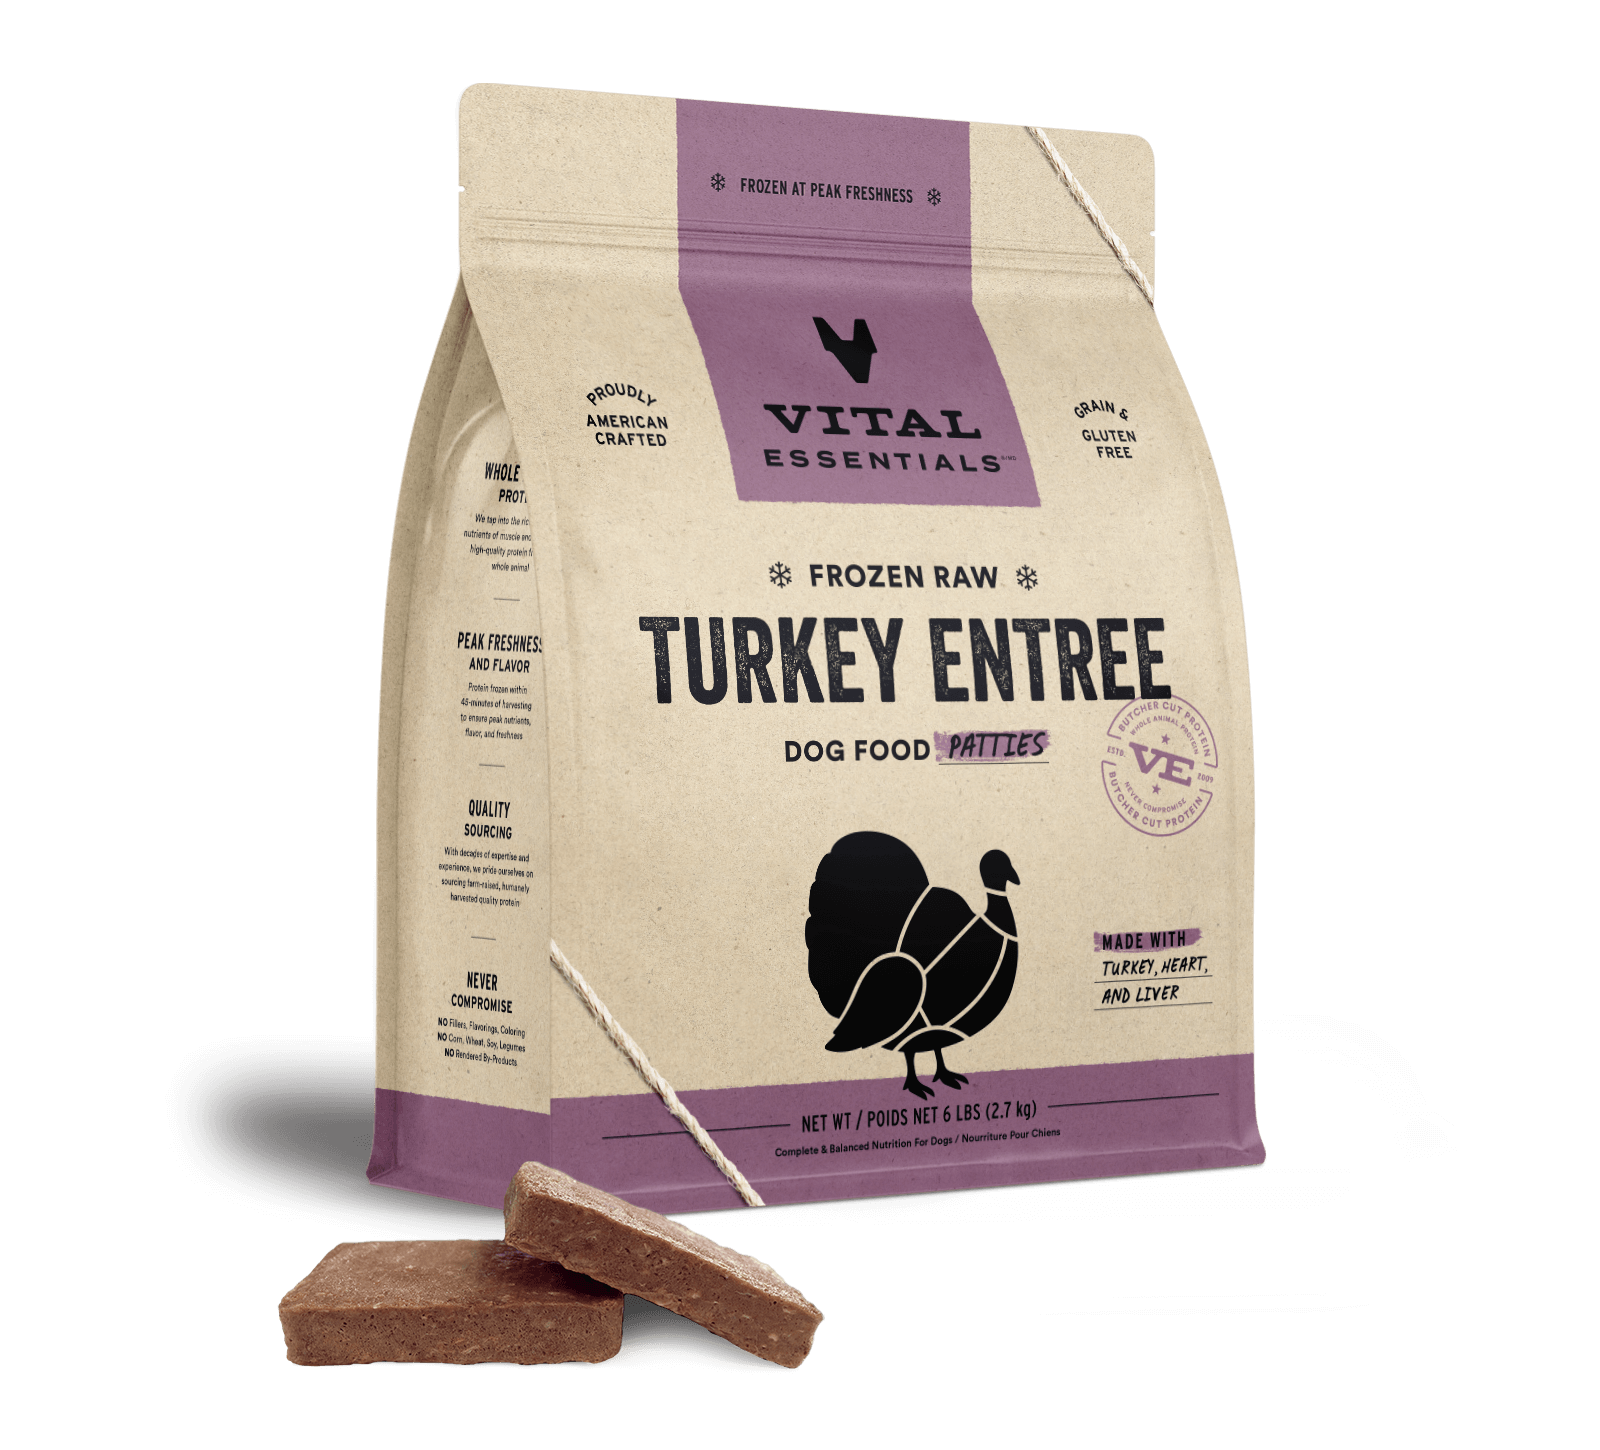 Vital Essentials Frozen Raw Turkey  Entree Dog Food Patties, 6 lbs - Treats